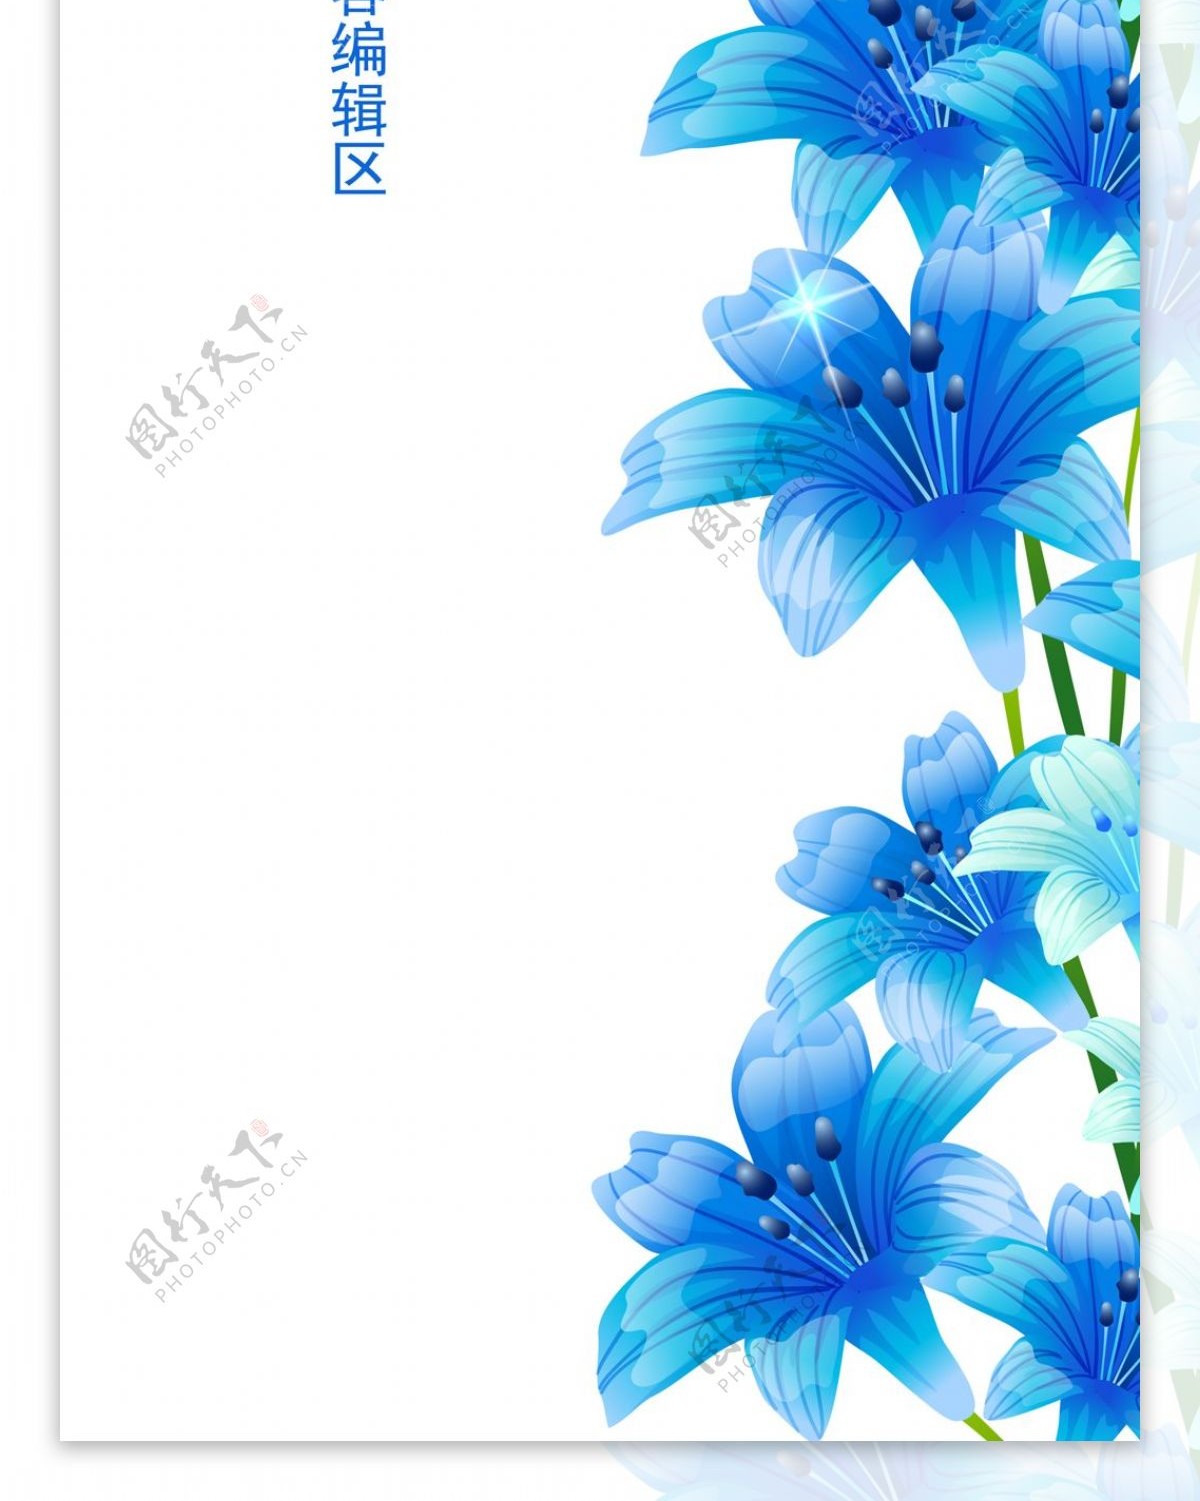 精美简约蓝色花儿展架设计模板素材